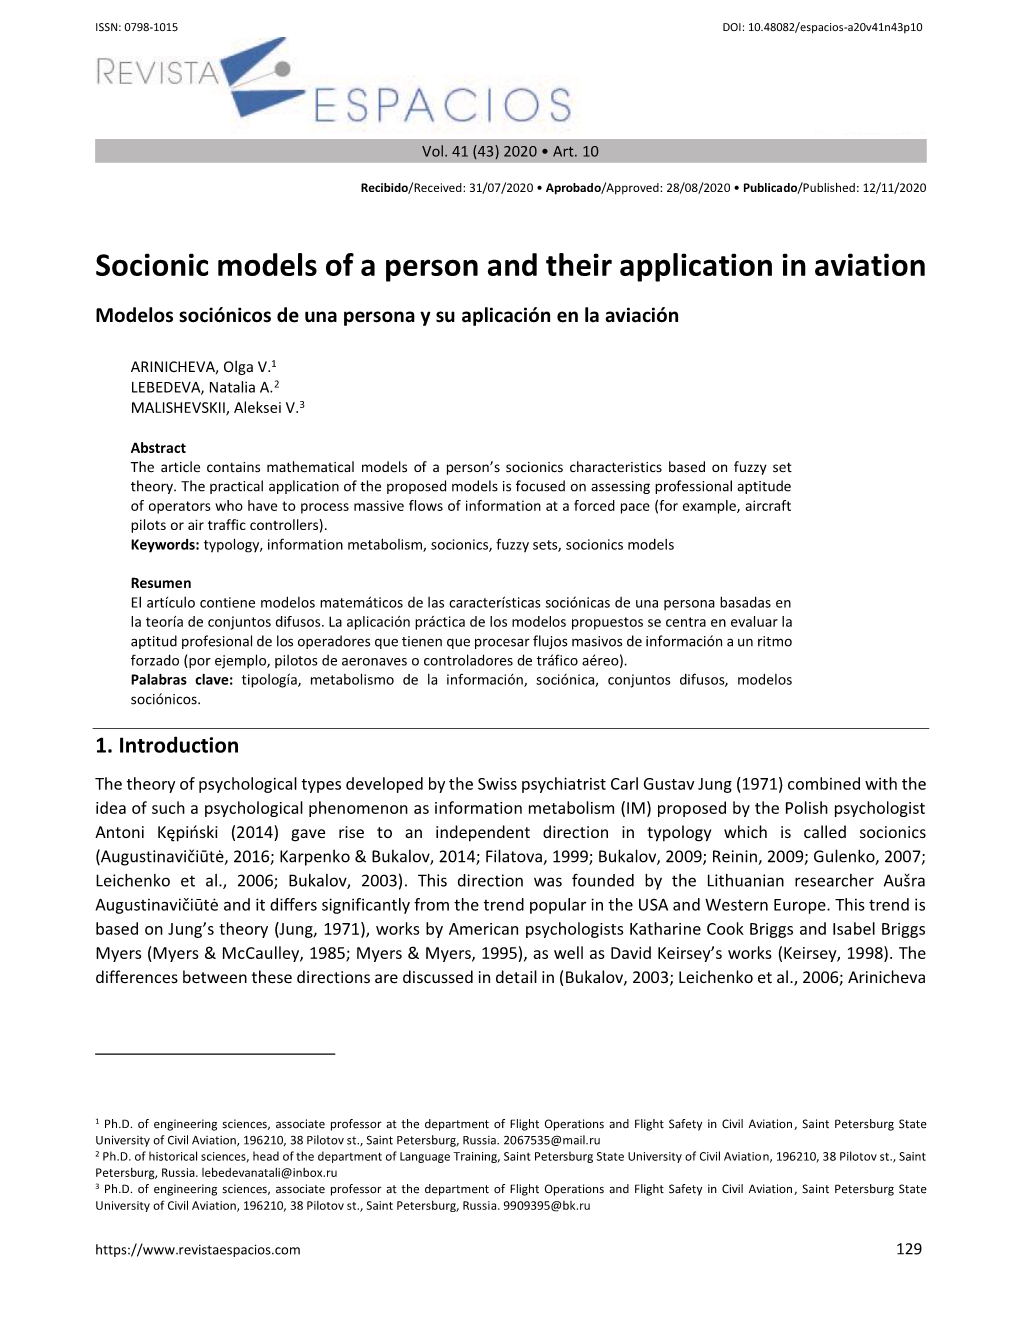 Socionic Models of a Person and Their Application in Aviation Modelos Sociónicos De Una Persona Y Su Aplicación En La Aviación